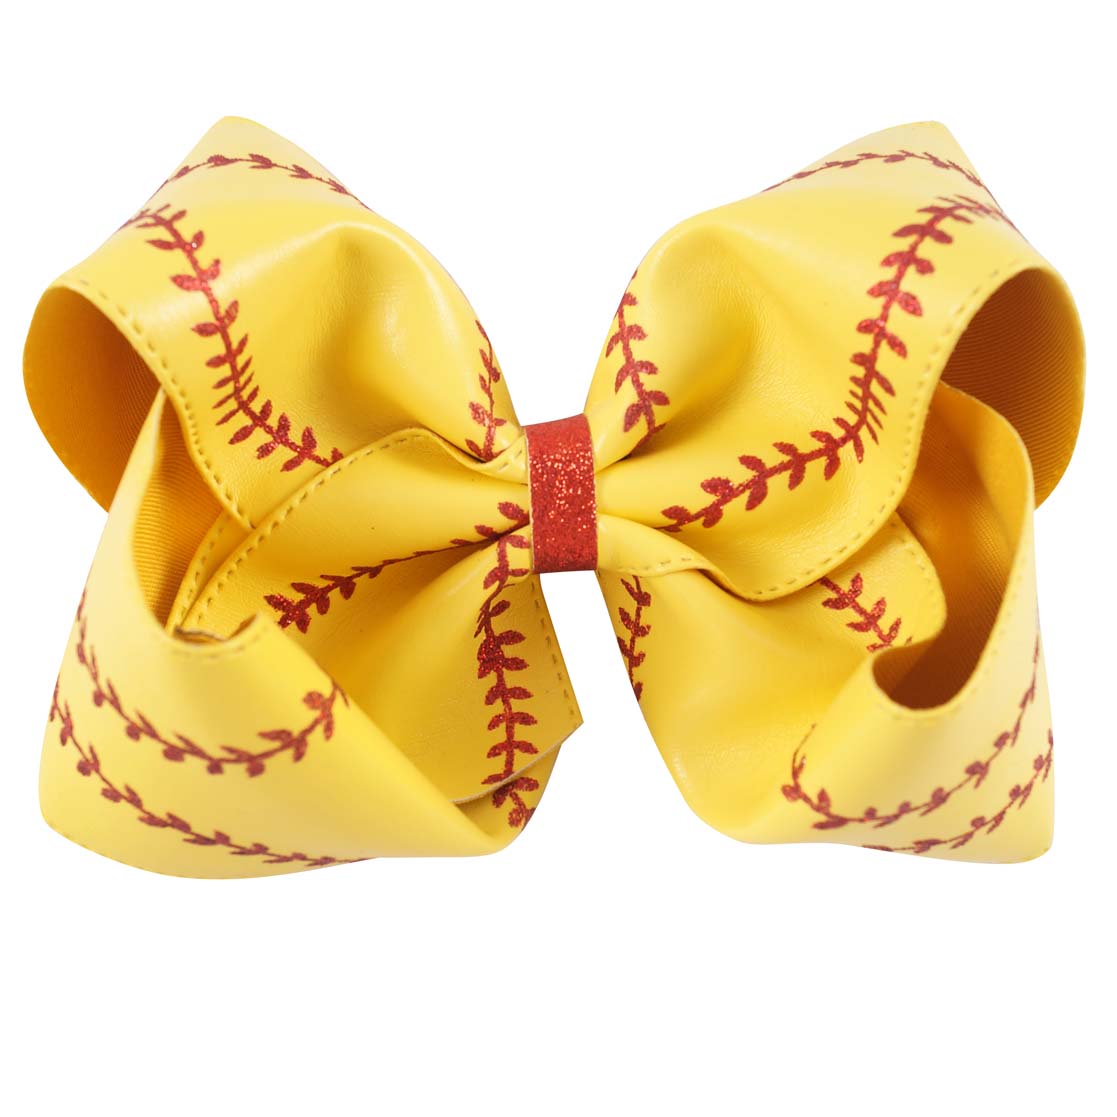 Jumbo Baseball Hair Bows | Softball Bows | Big Leather Bows